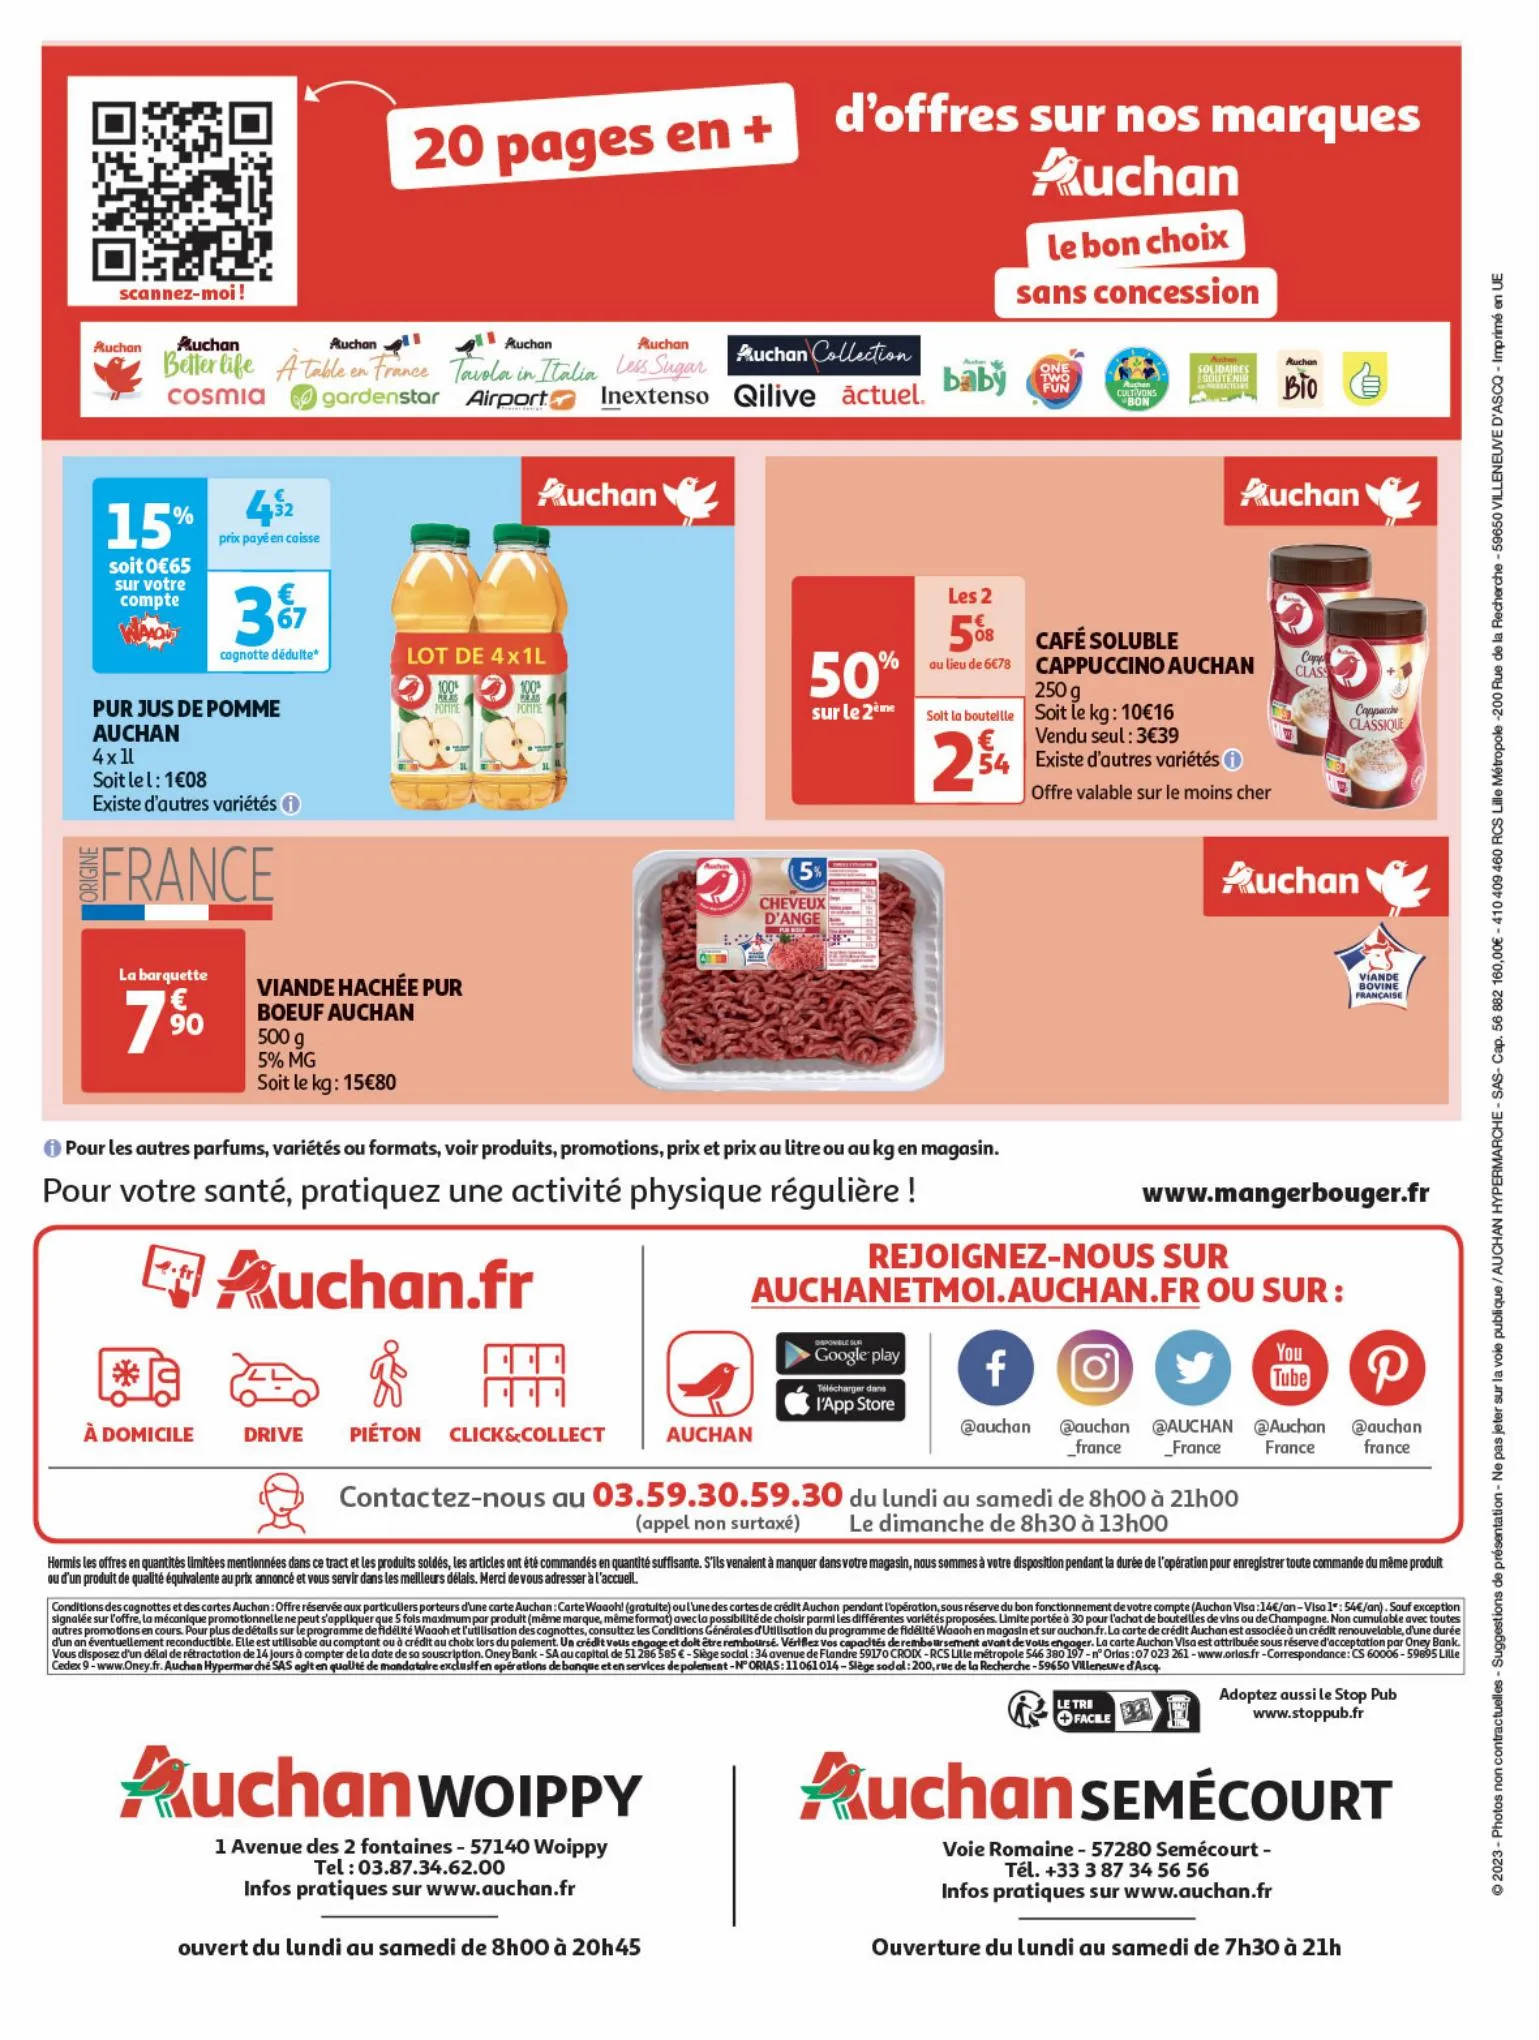 Catalogue Plein d'offres sur nos marques Auchan, page 00028